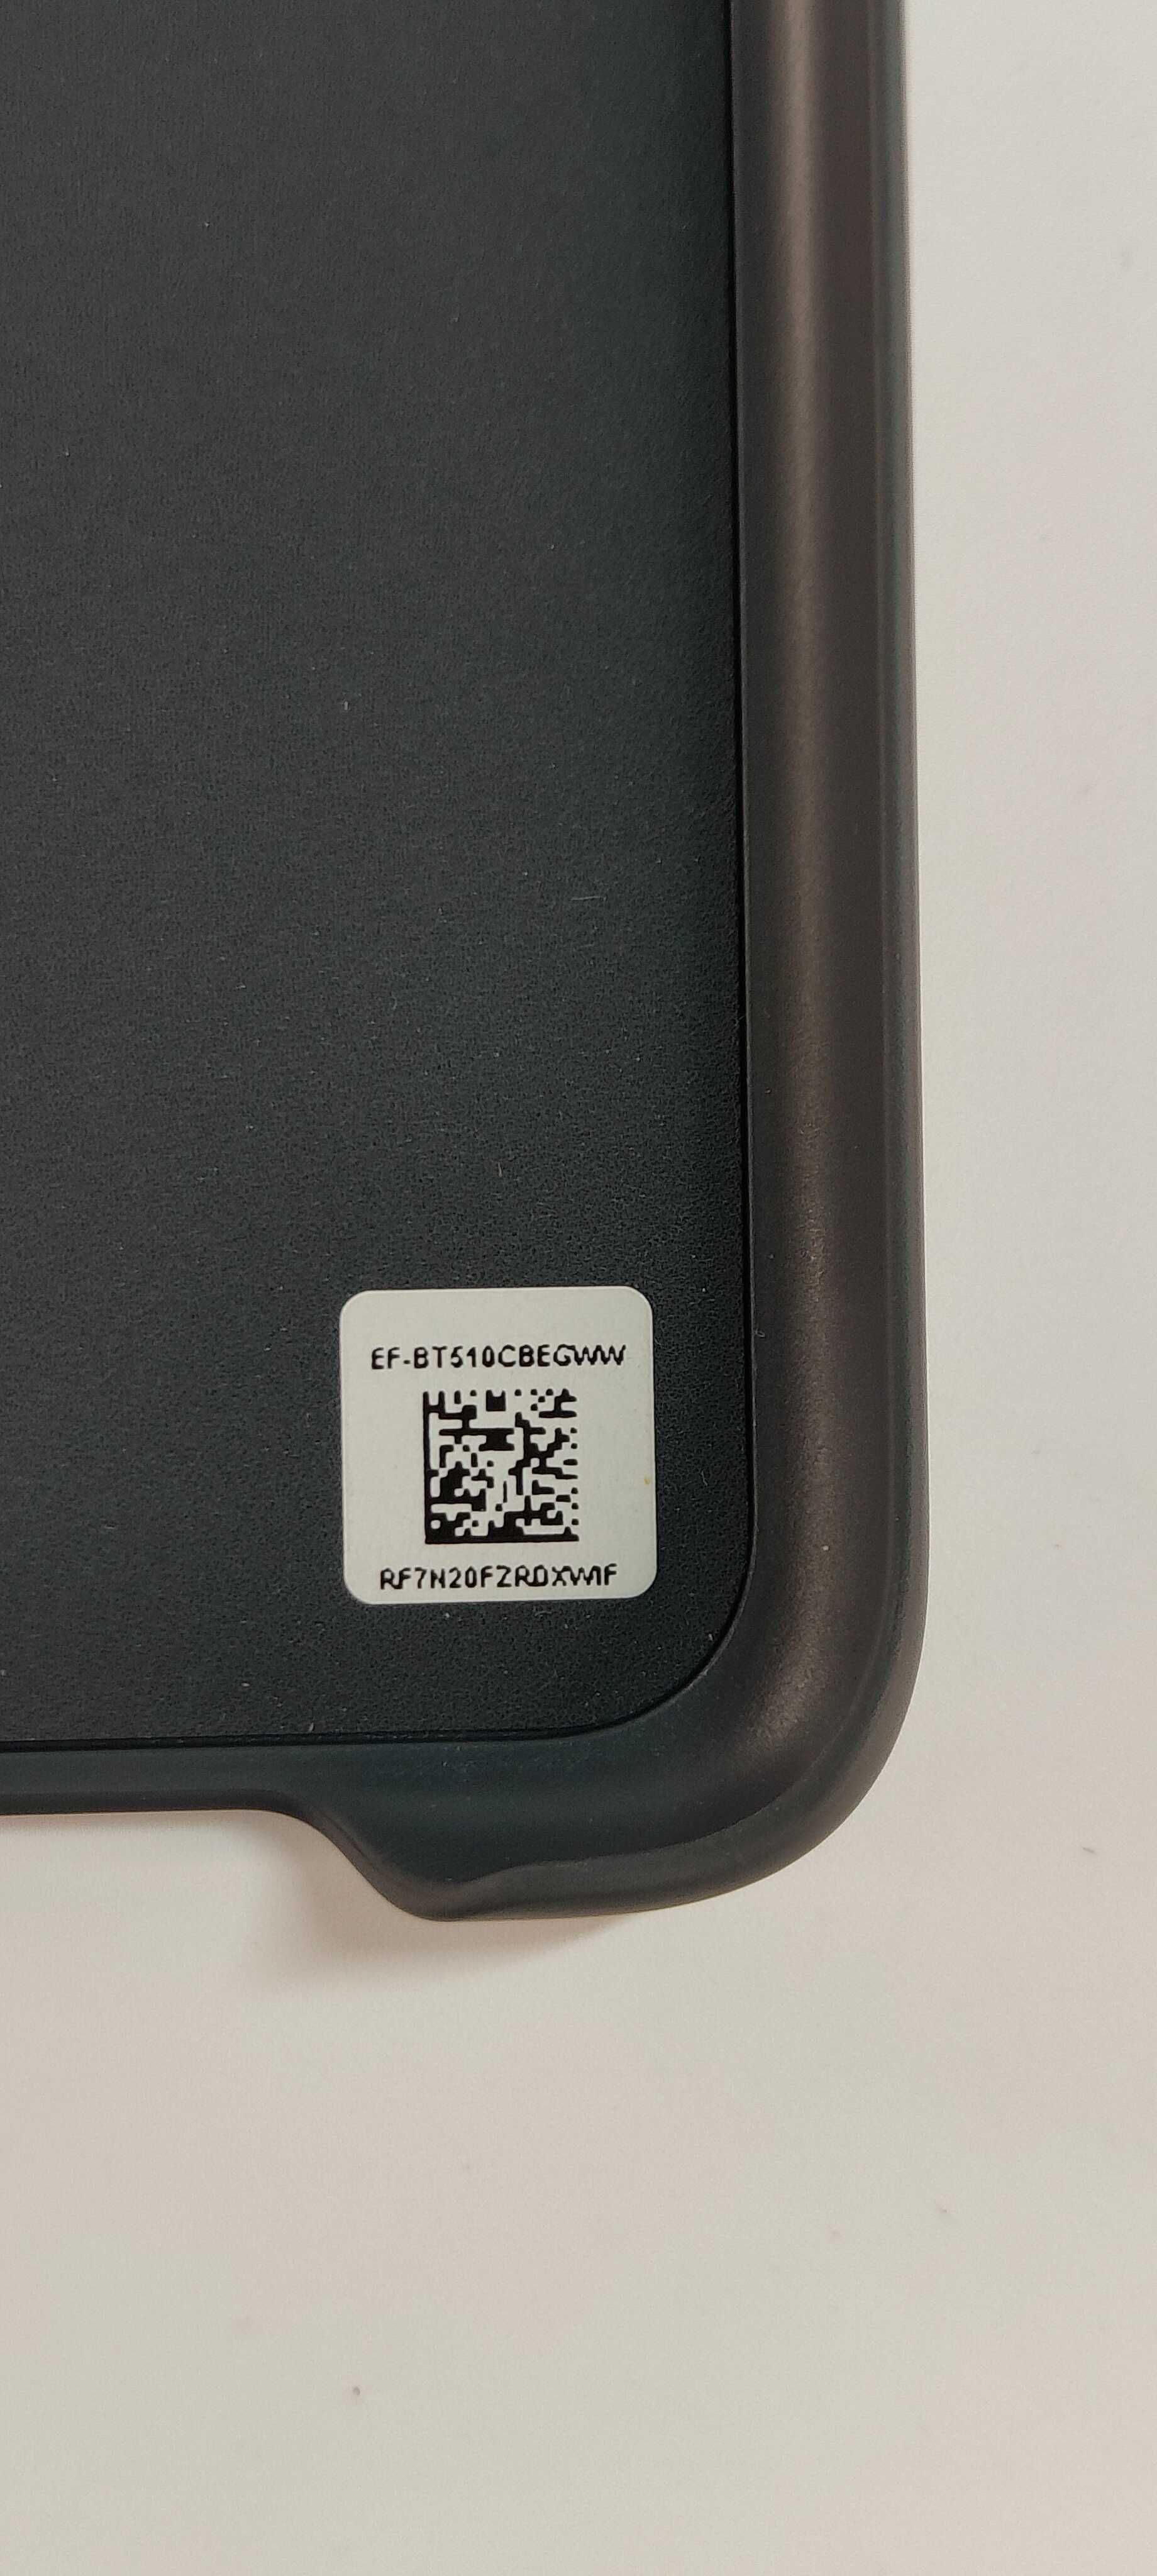 Чехол Оригінал Samsung Galaxy tab A 10.1 2019 ef-bt510